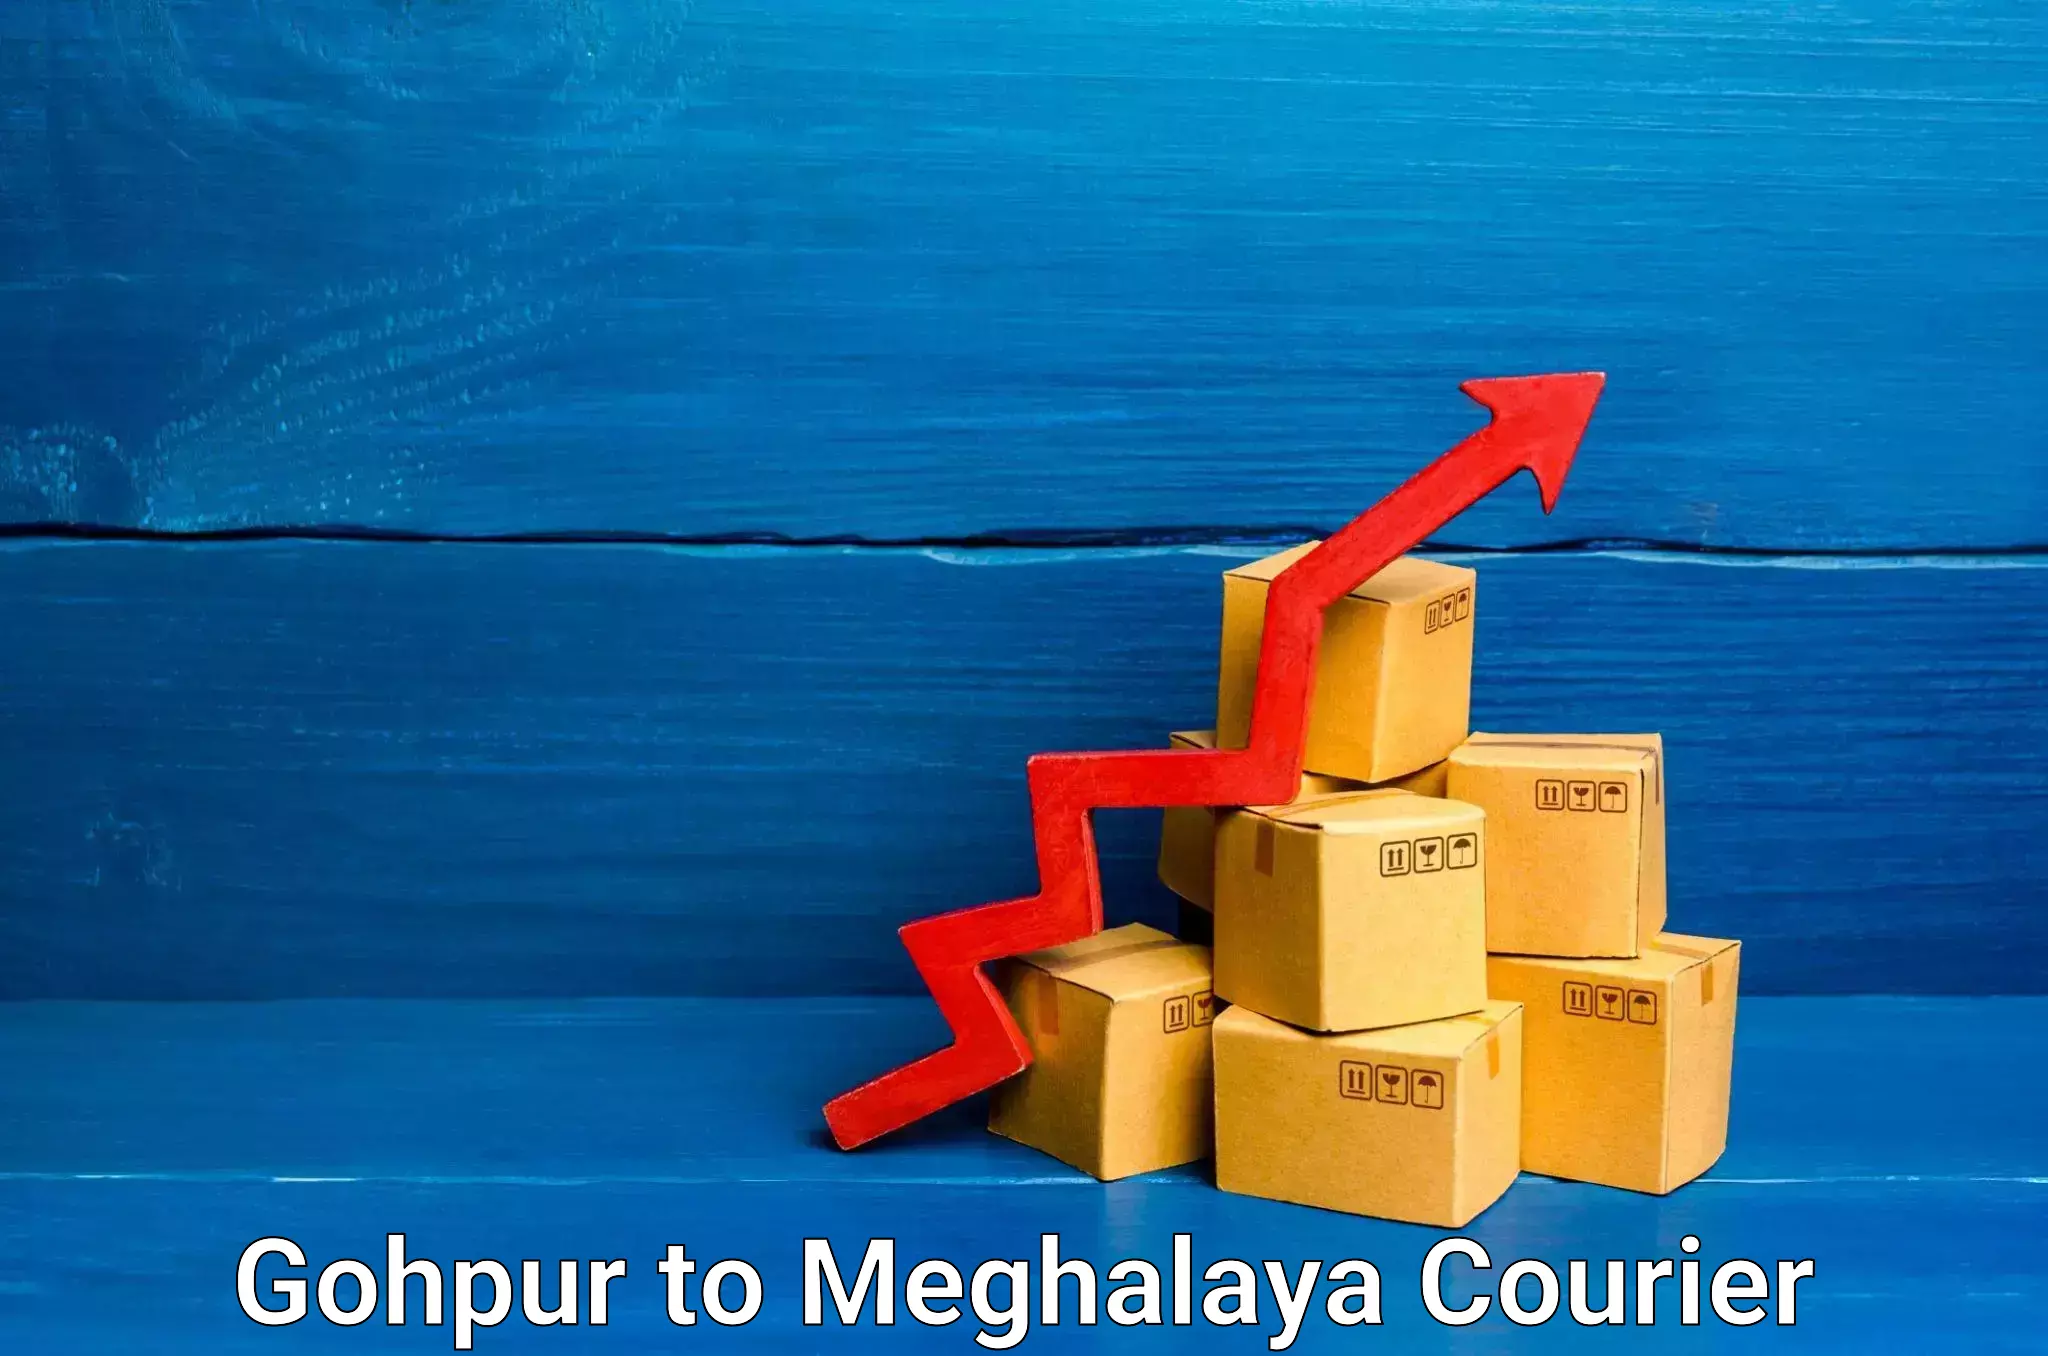 Courier service efficiency Gohpur to Dkhiah West